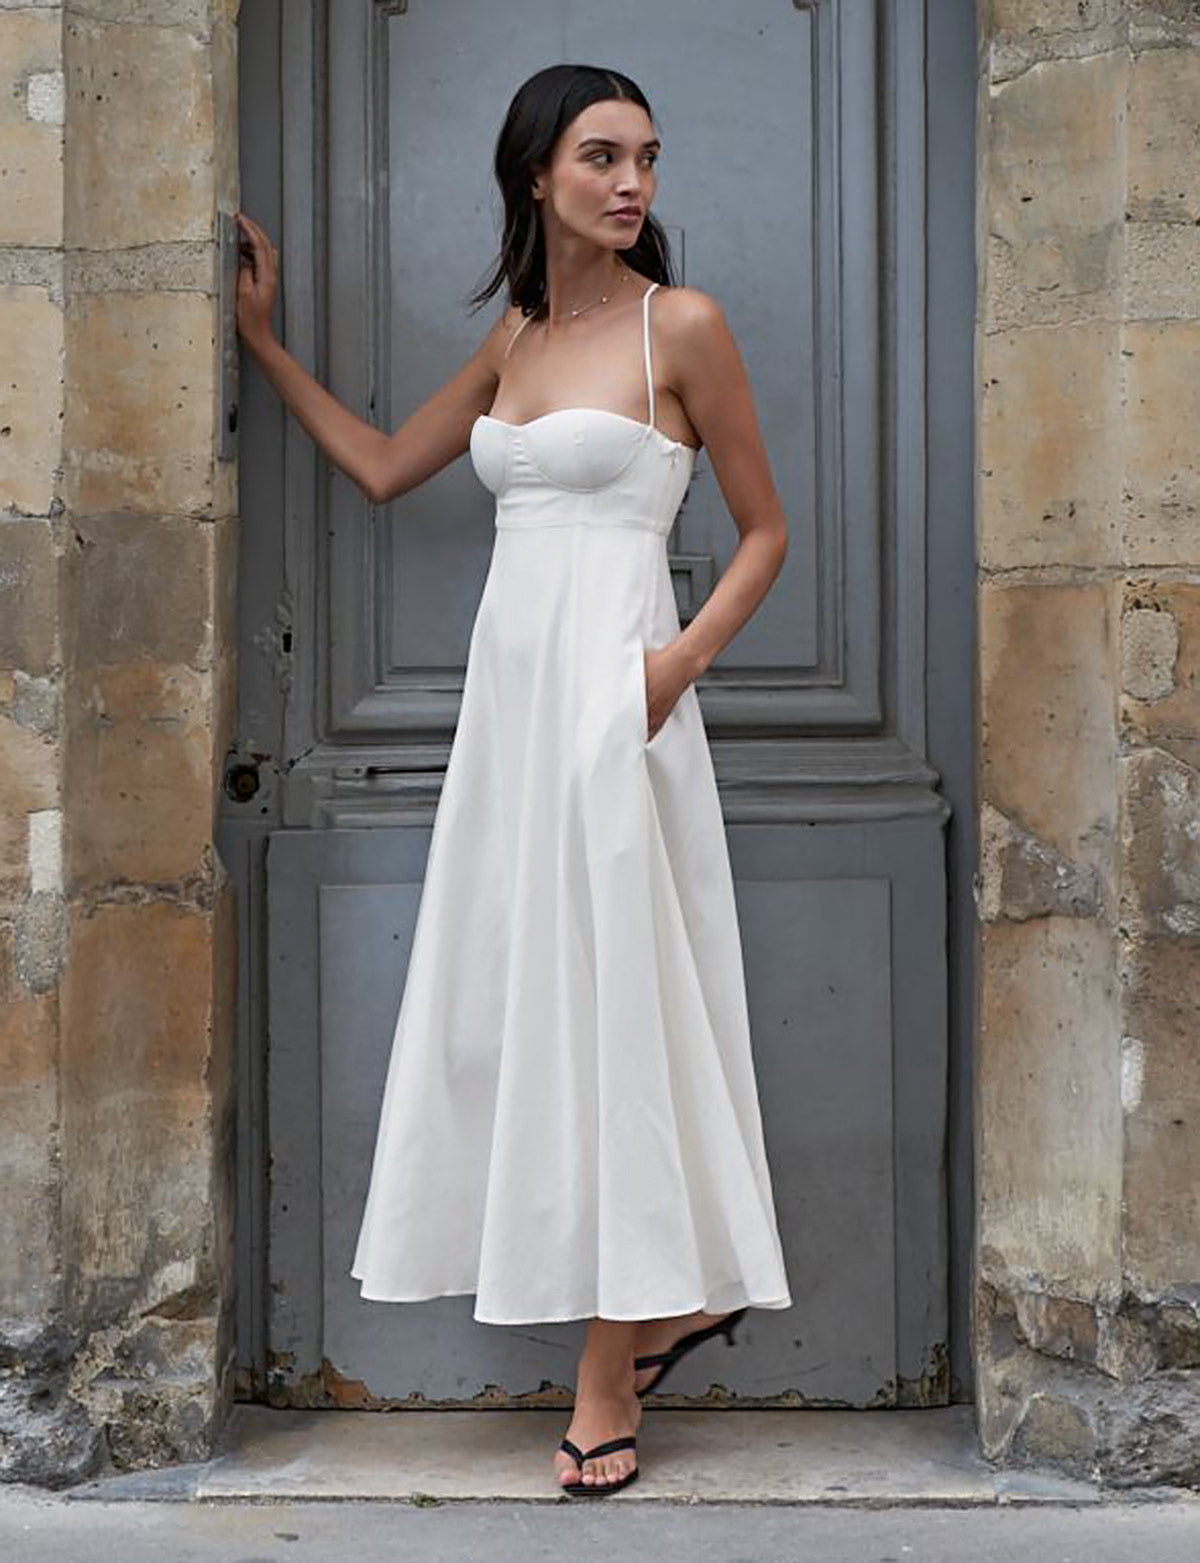 Antonia Padded Dress in White Linen-BESTSELLER